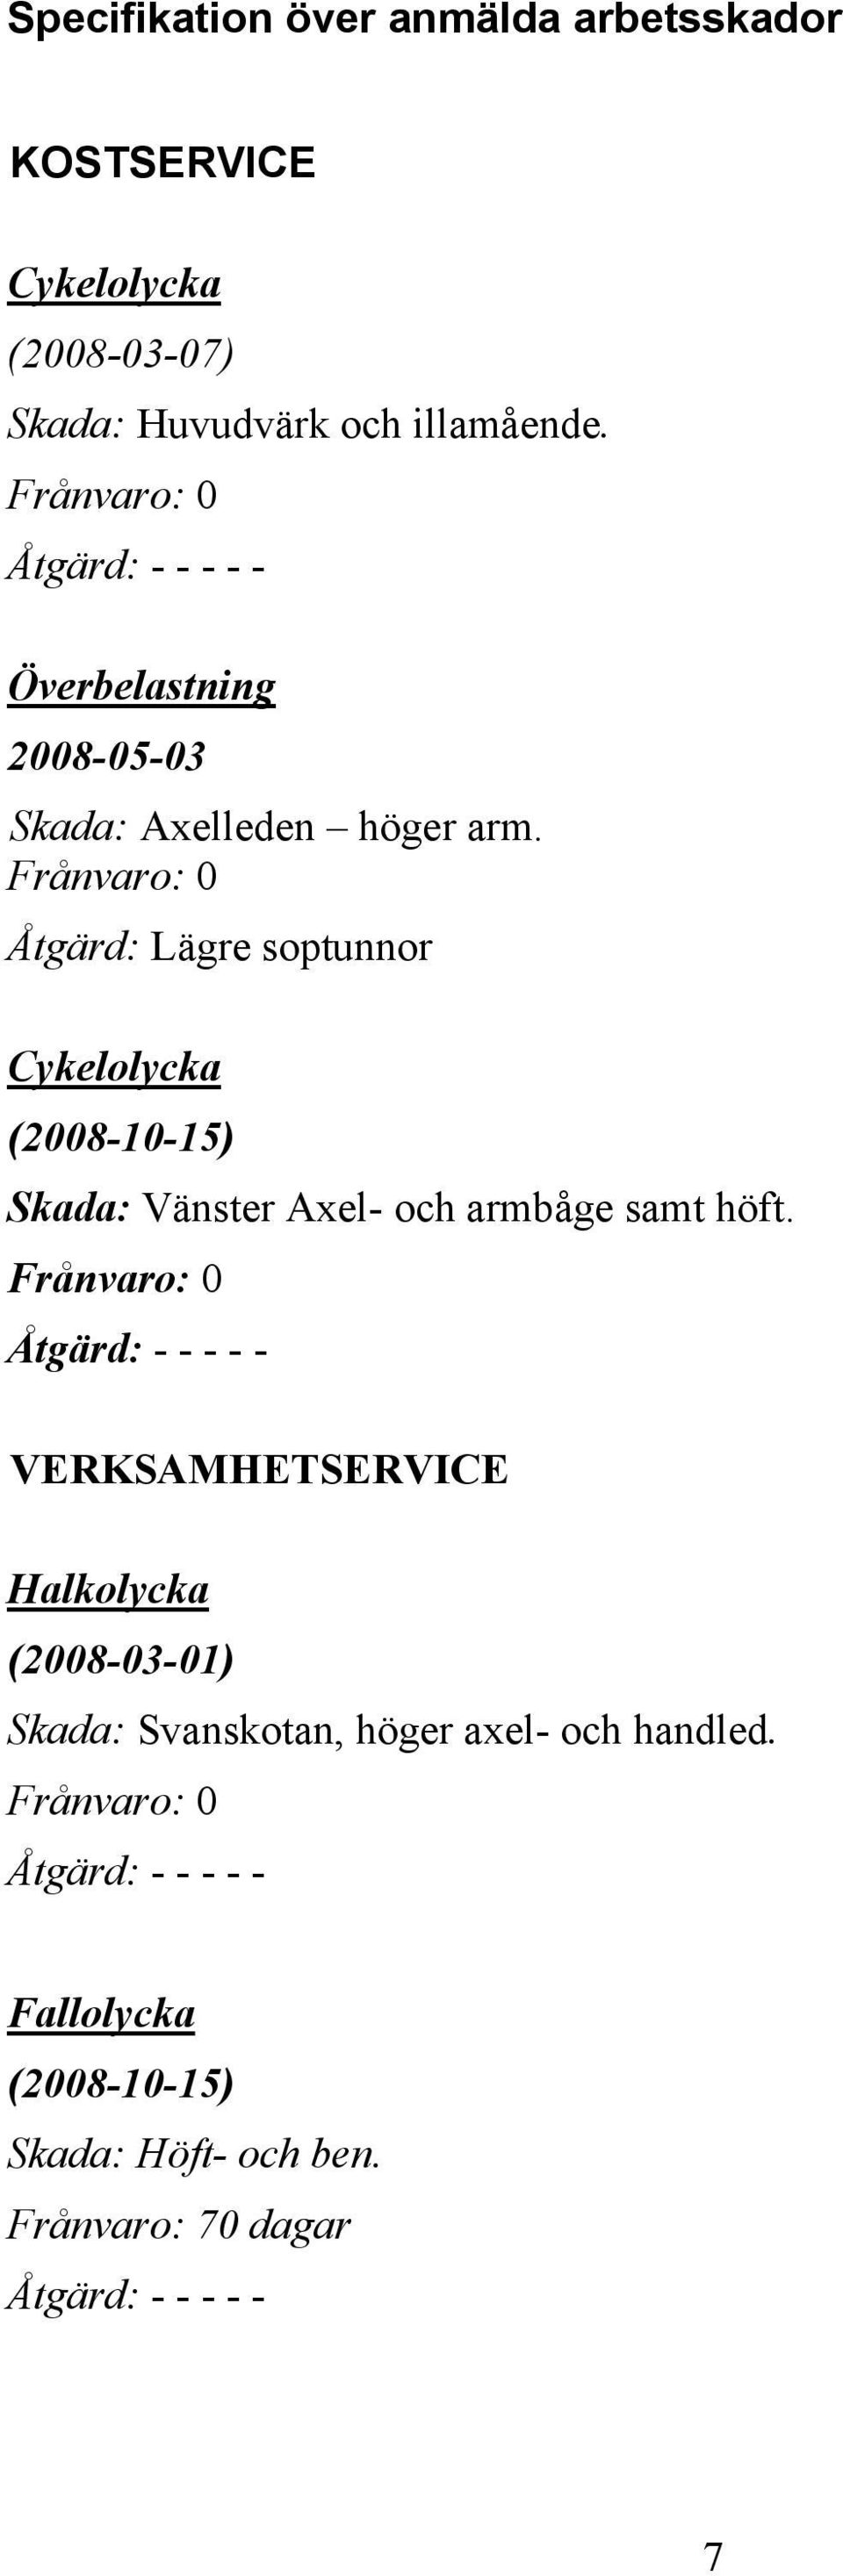 Frånvaro: 0 Åtgärd: Lägre soptunnor Cykelolycka (2008-10-15) Skada: Vänster Axel- och armbåge samt höft.